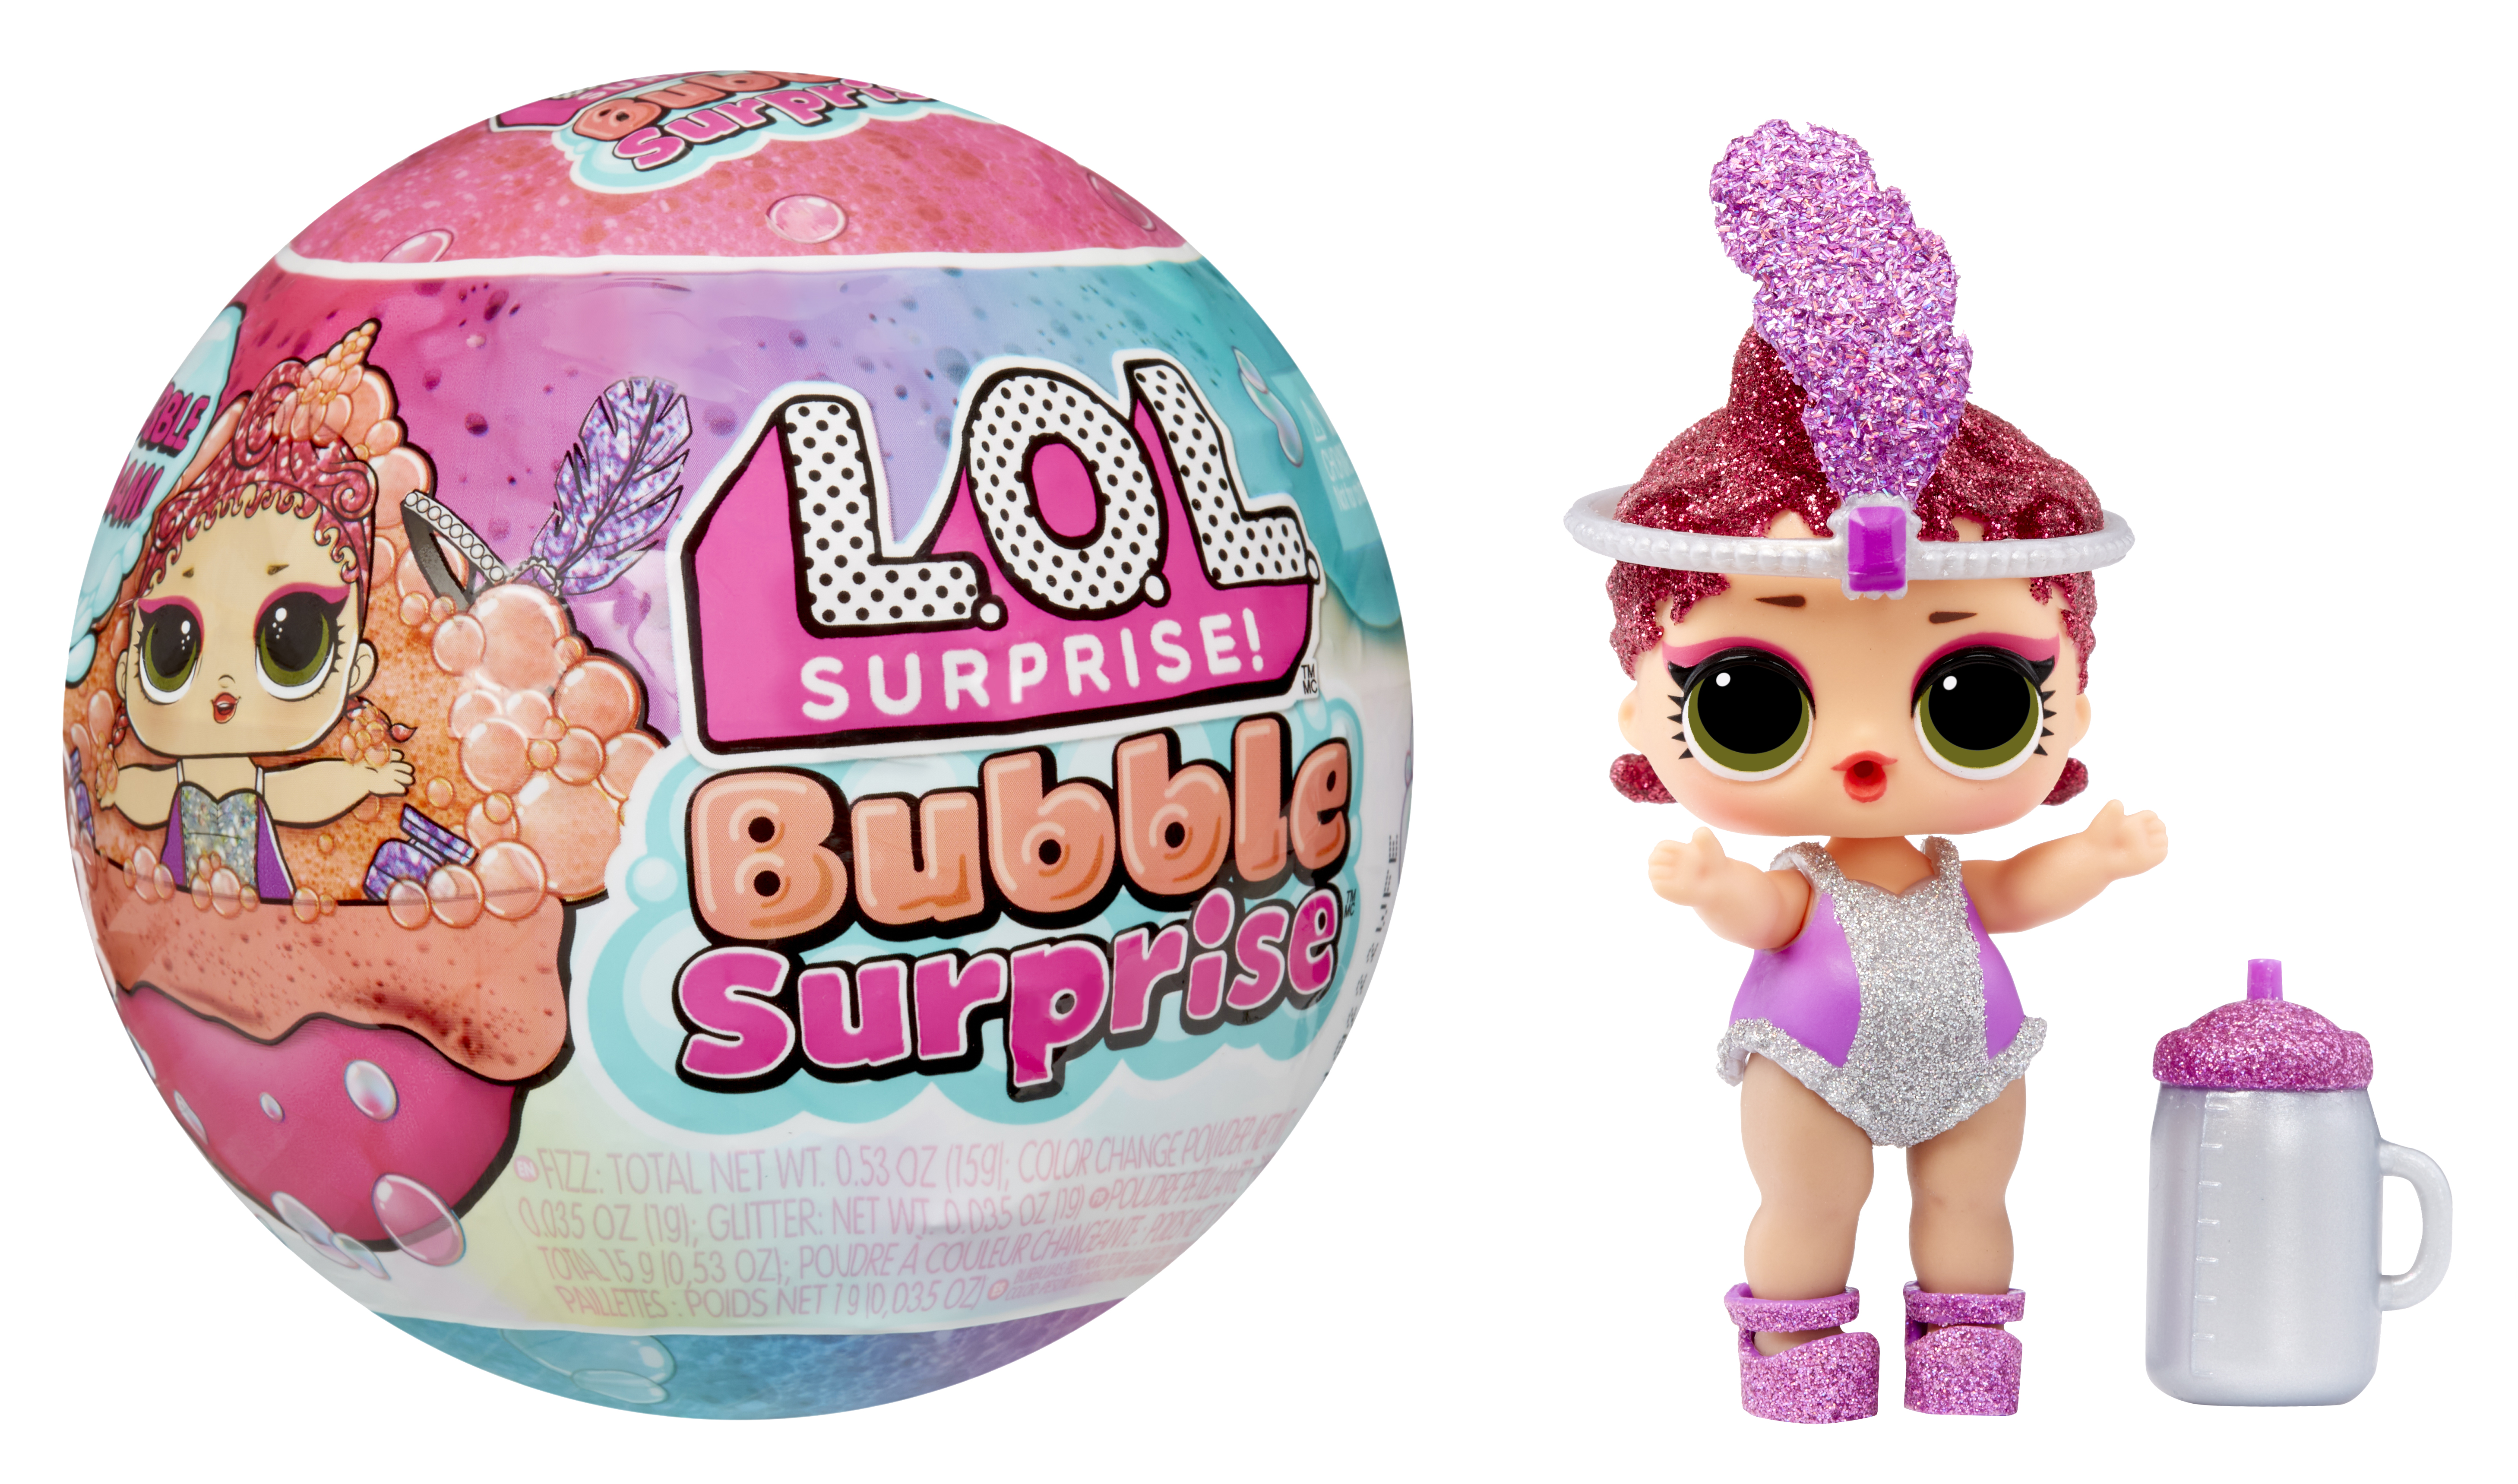 New L.O.L. Surprise! Bubble Surprise Dolls Put a Twist on Surprise Toys -  The Toy Insider